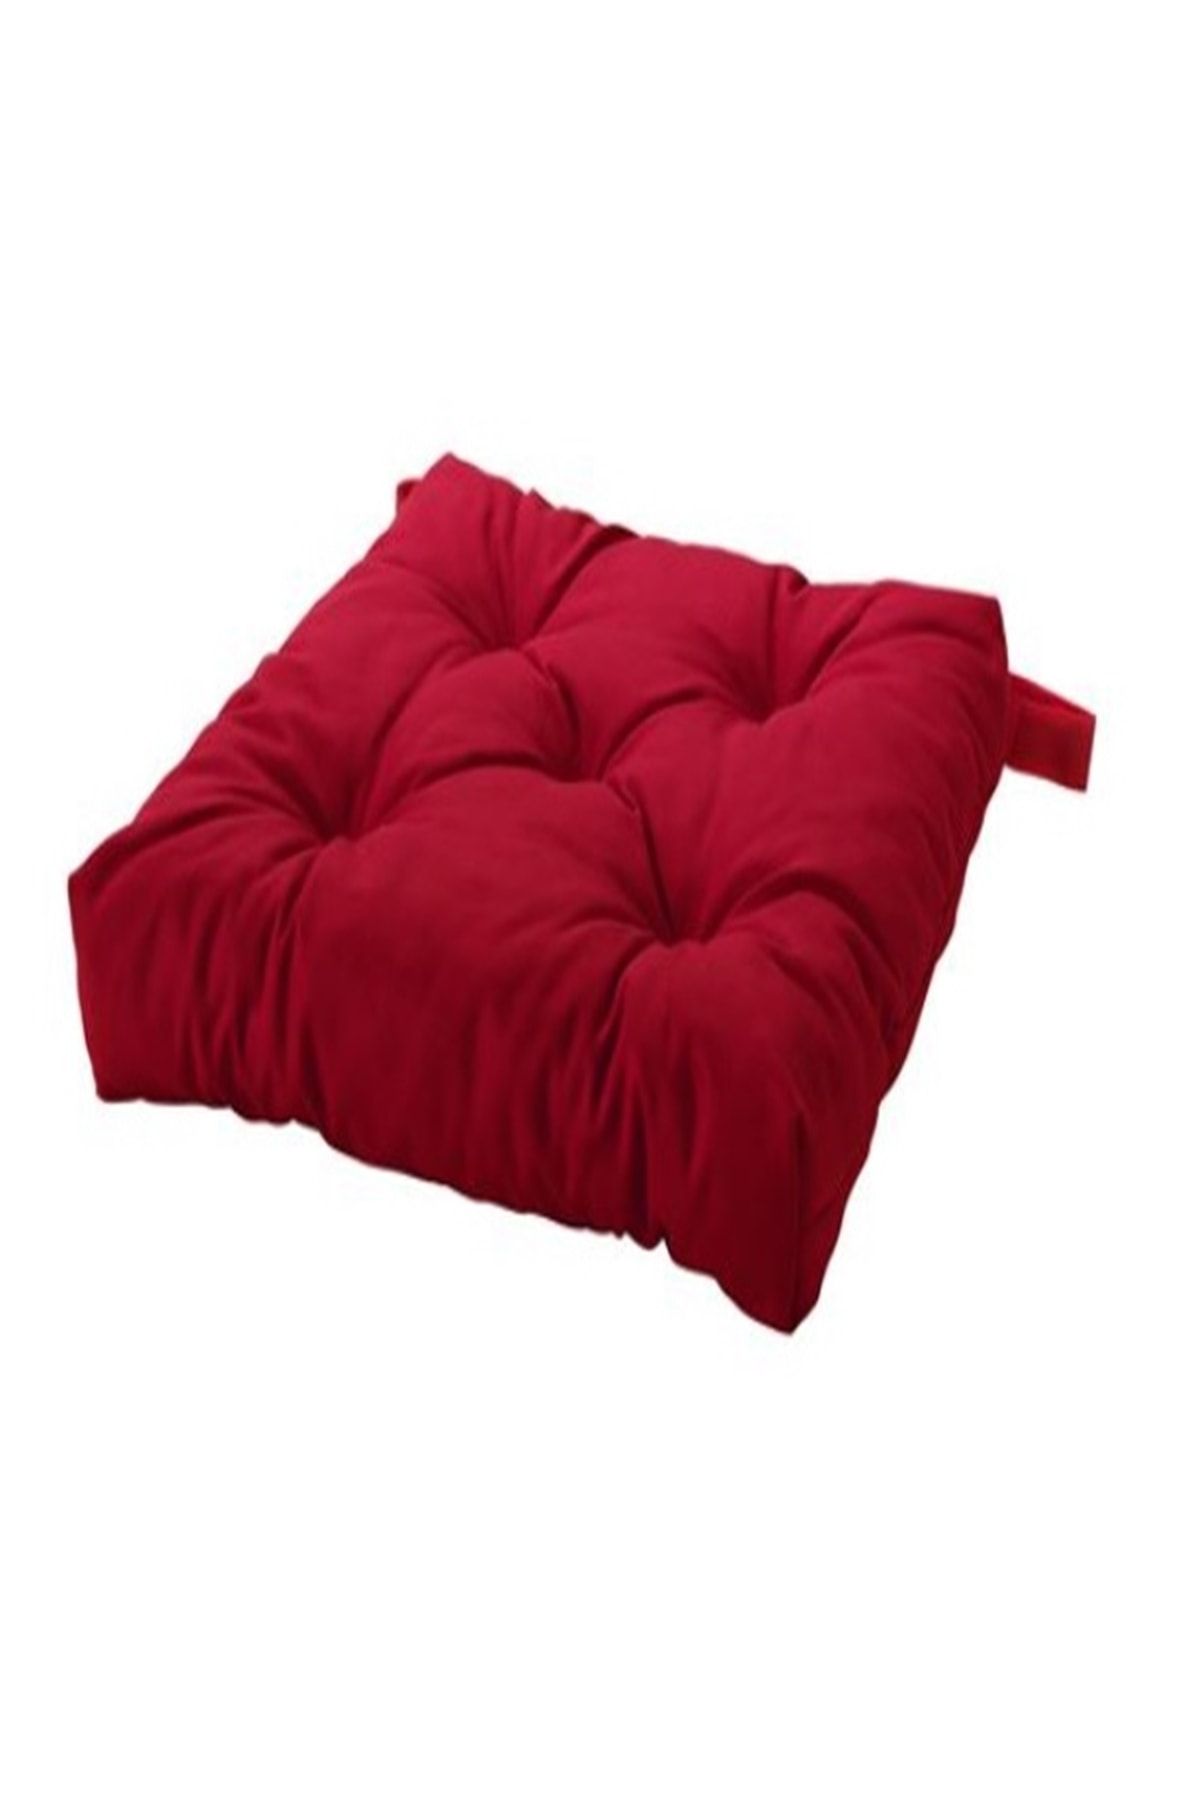 IKEA Malında Kırmızı  Sandalye Minderi 40/35x38x7 Cm